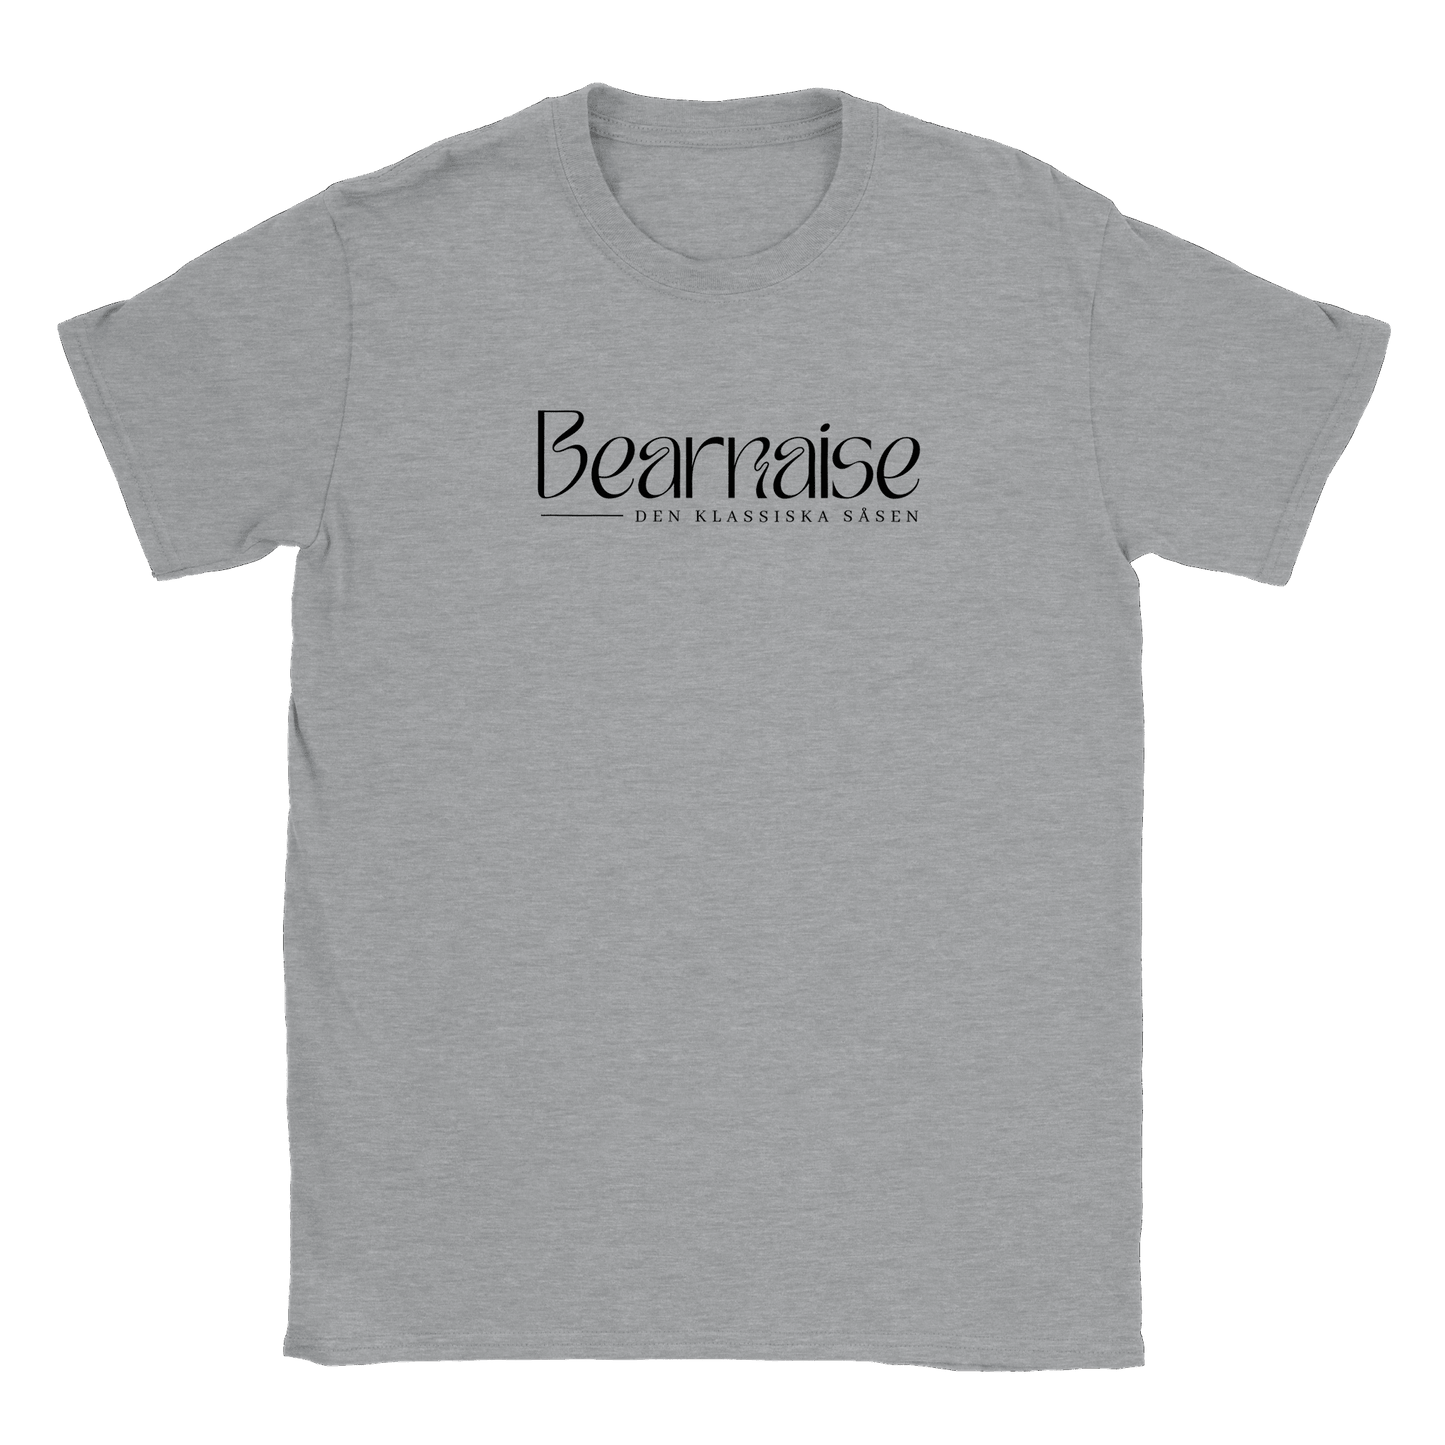 Bearnaisesås - T-shirt Sports Grey